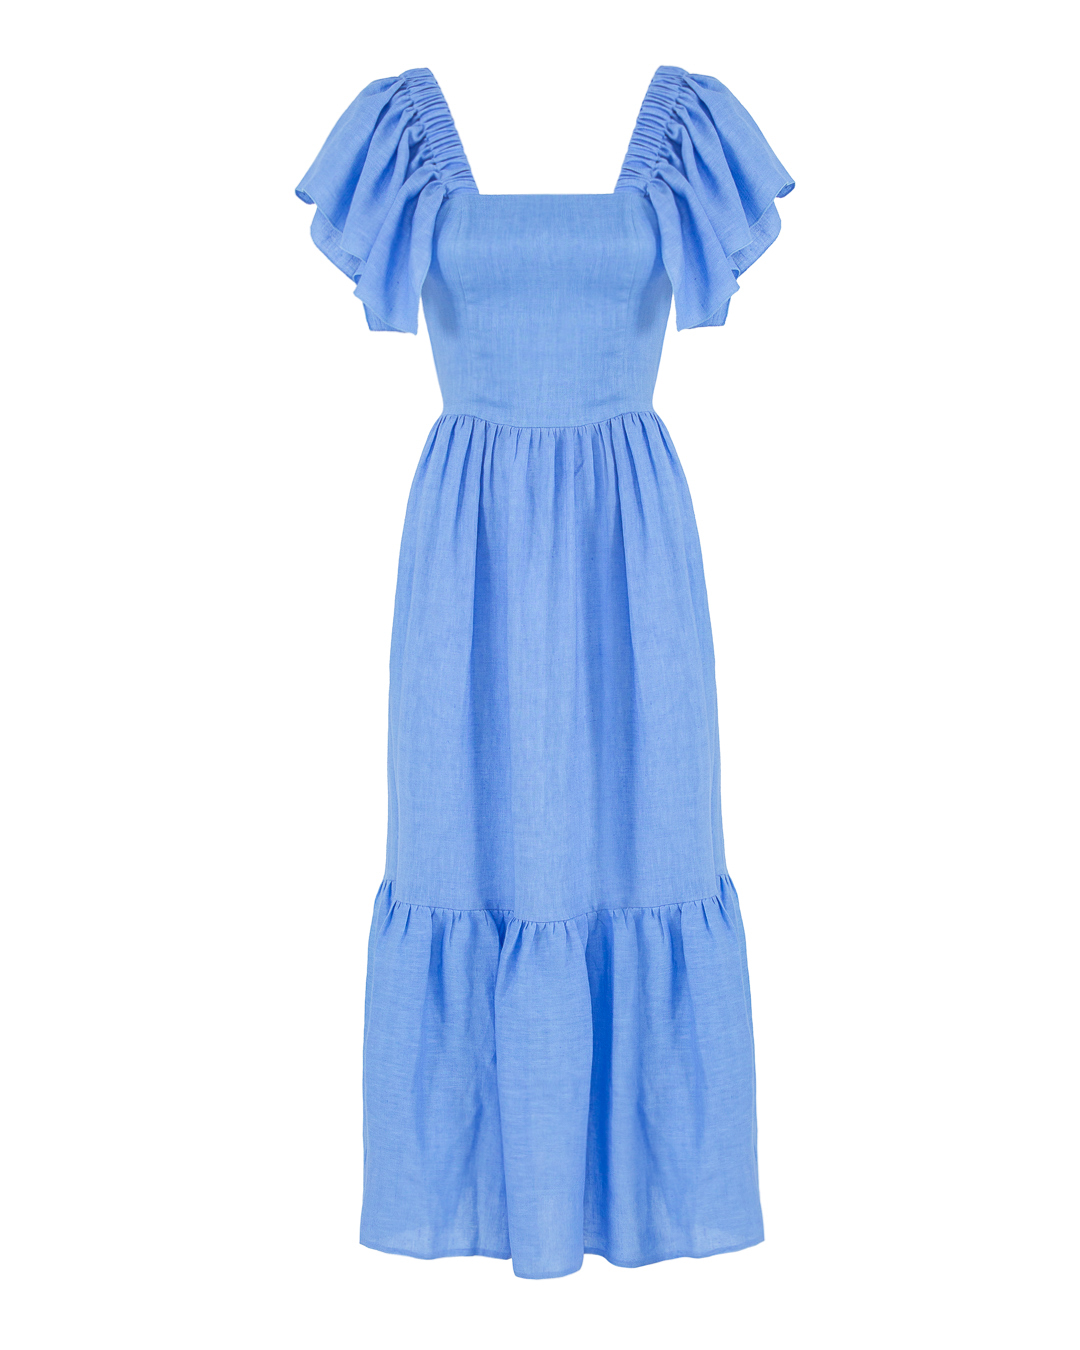 платье изо льна ACTUALEE платье школа 4 для девочки т синий рост 146 см